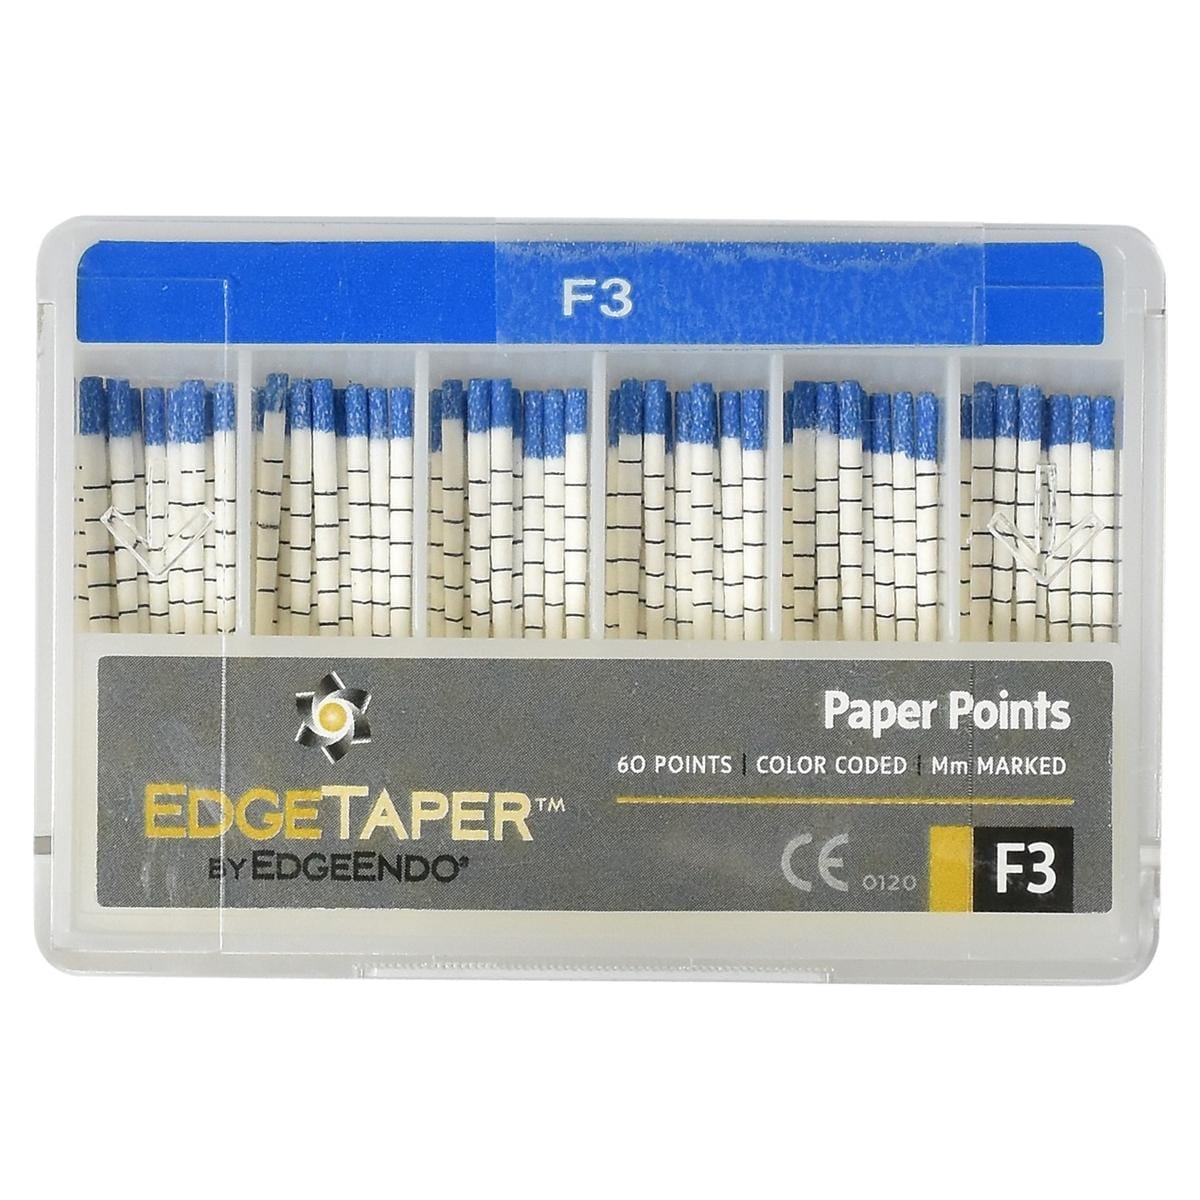 EdgeTaper Paper Point - F3